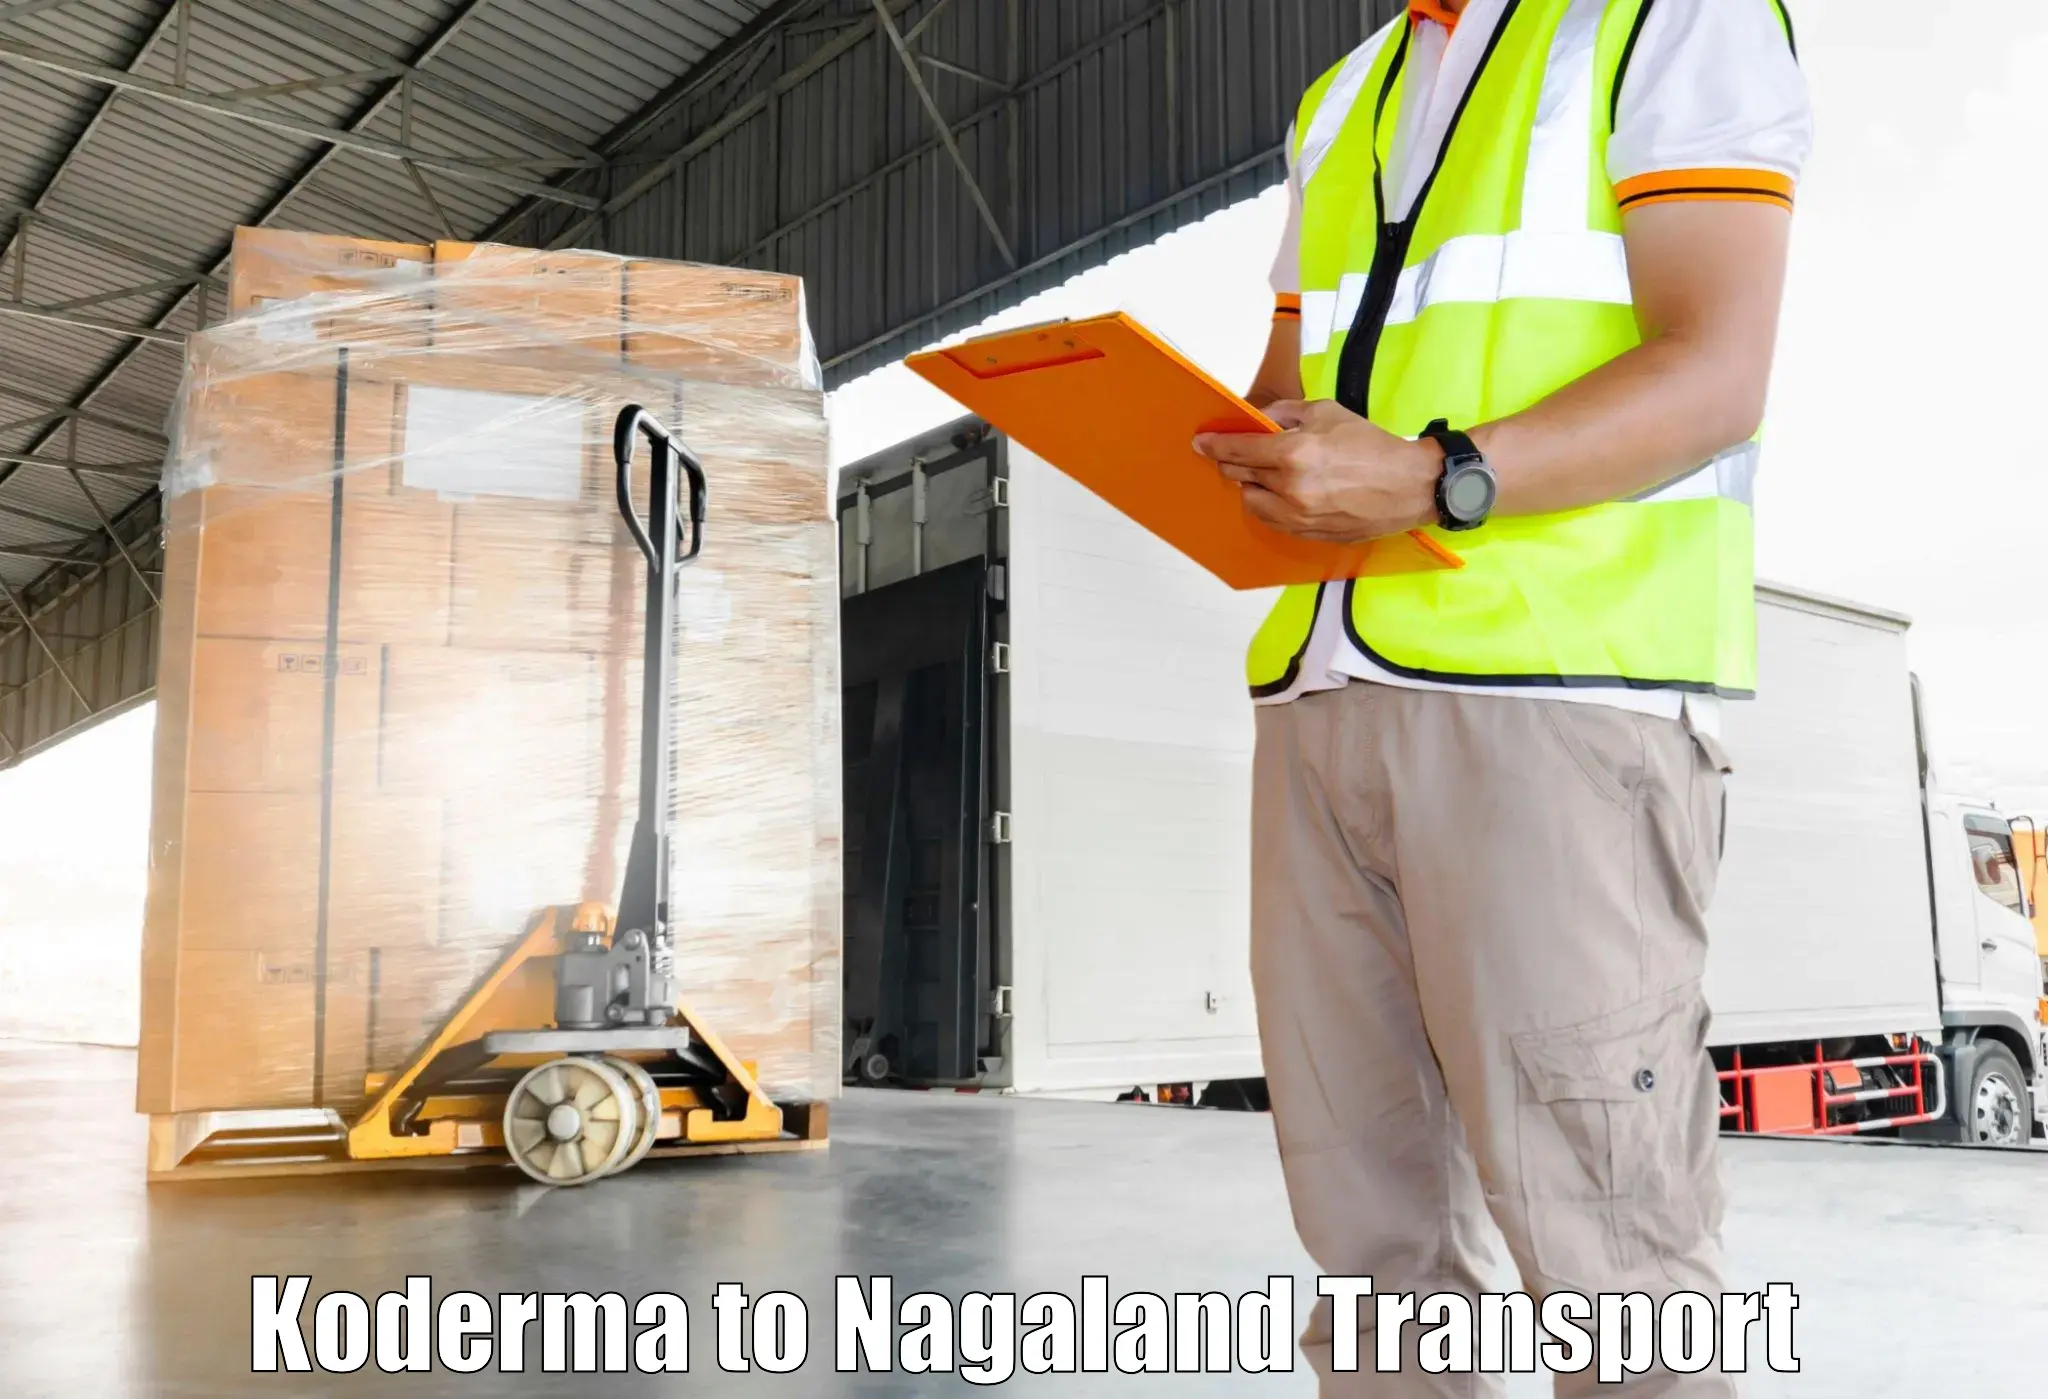 Nearest transport service Koderma to Nagaland